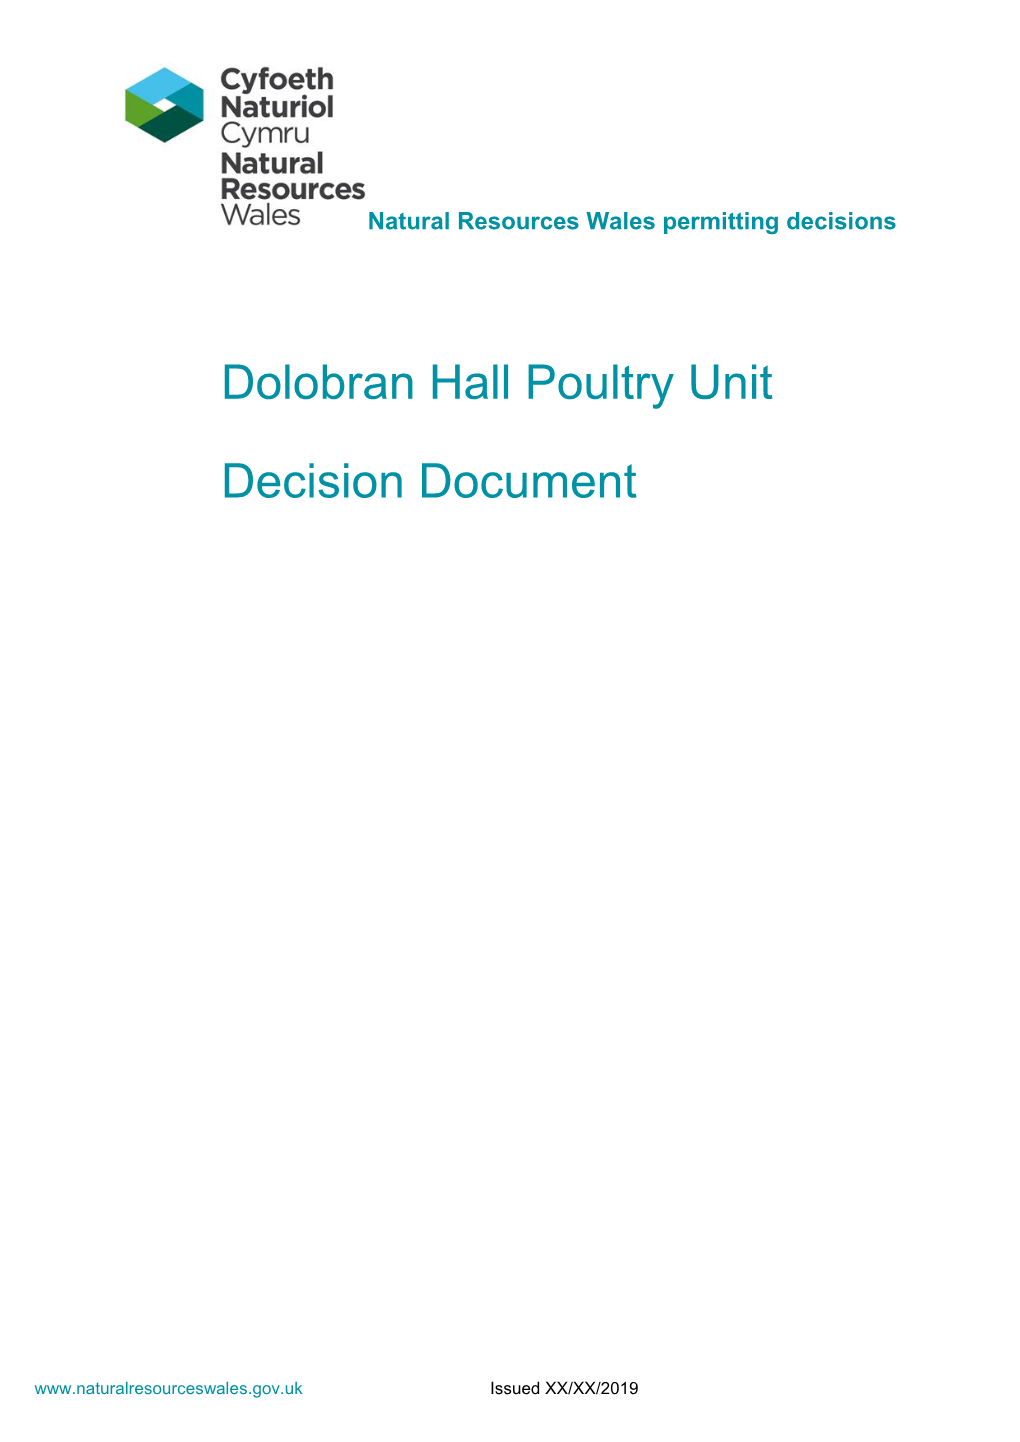 Dolobran Hall Poultry Unit Decision Document